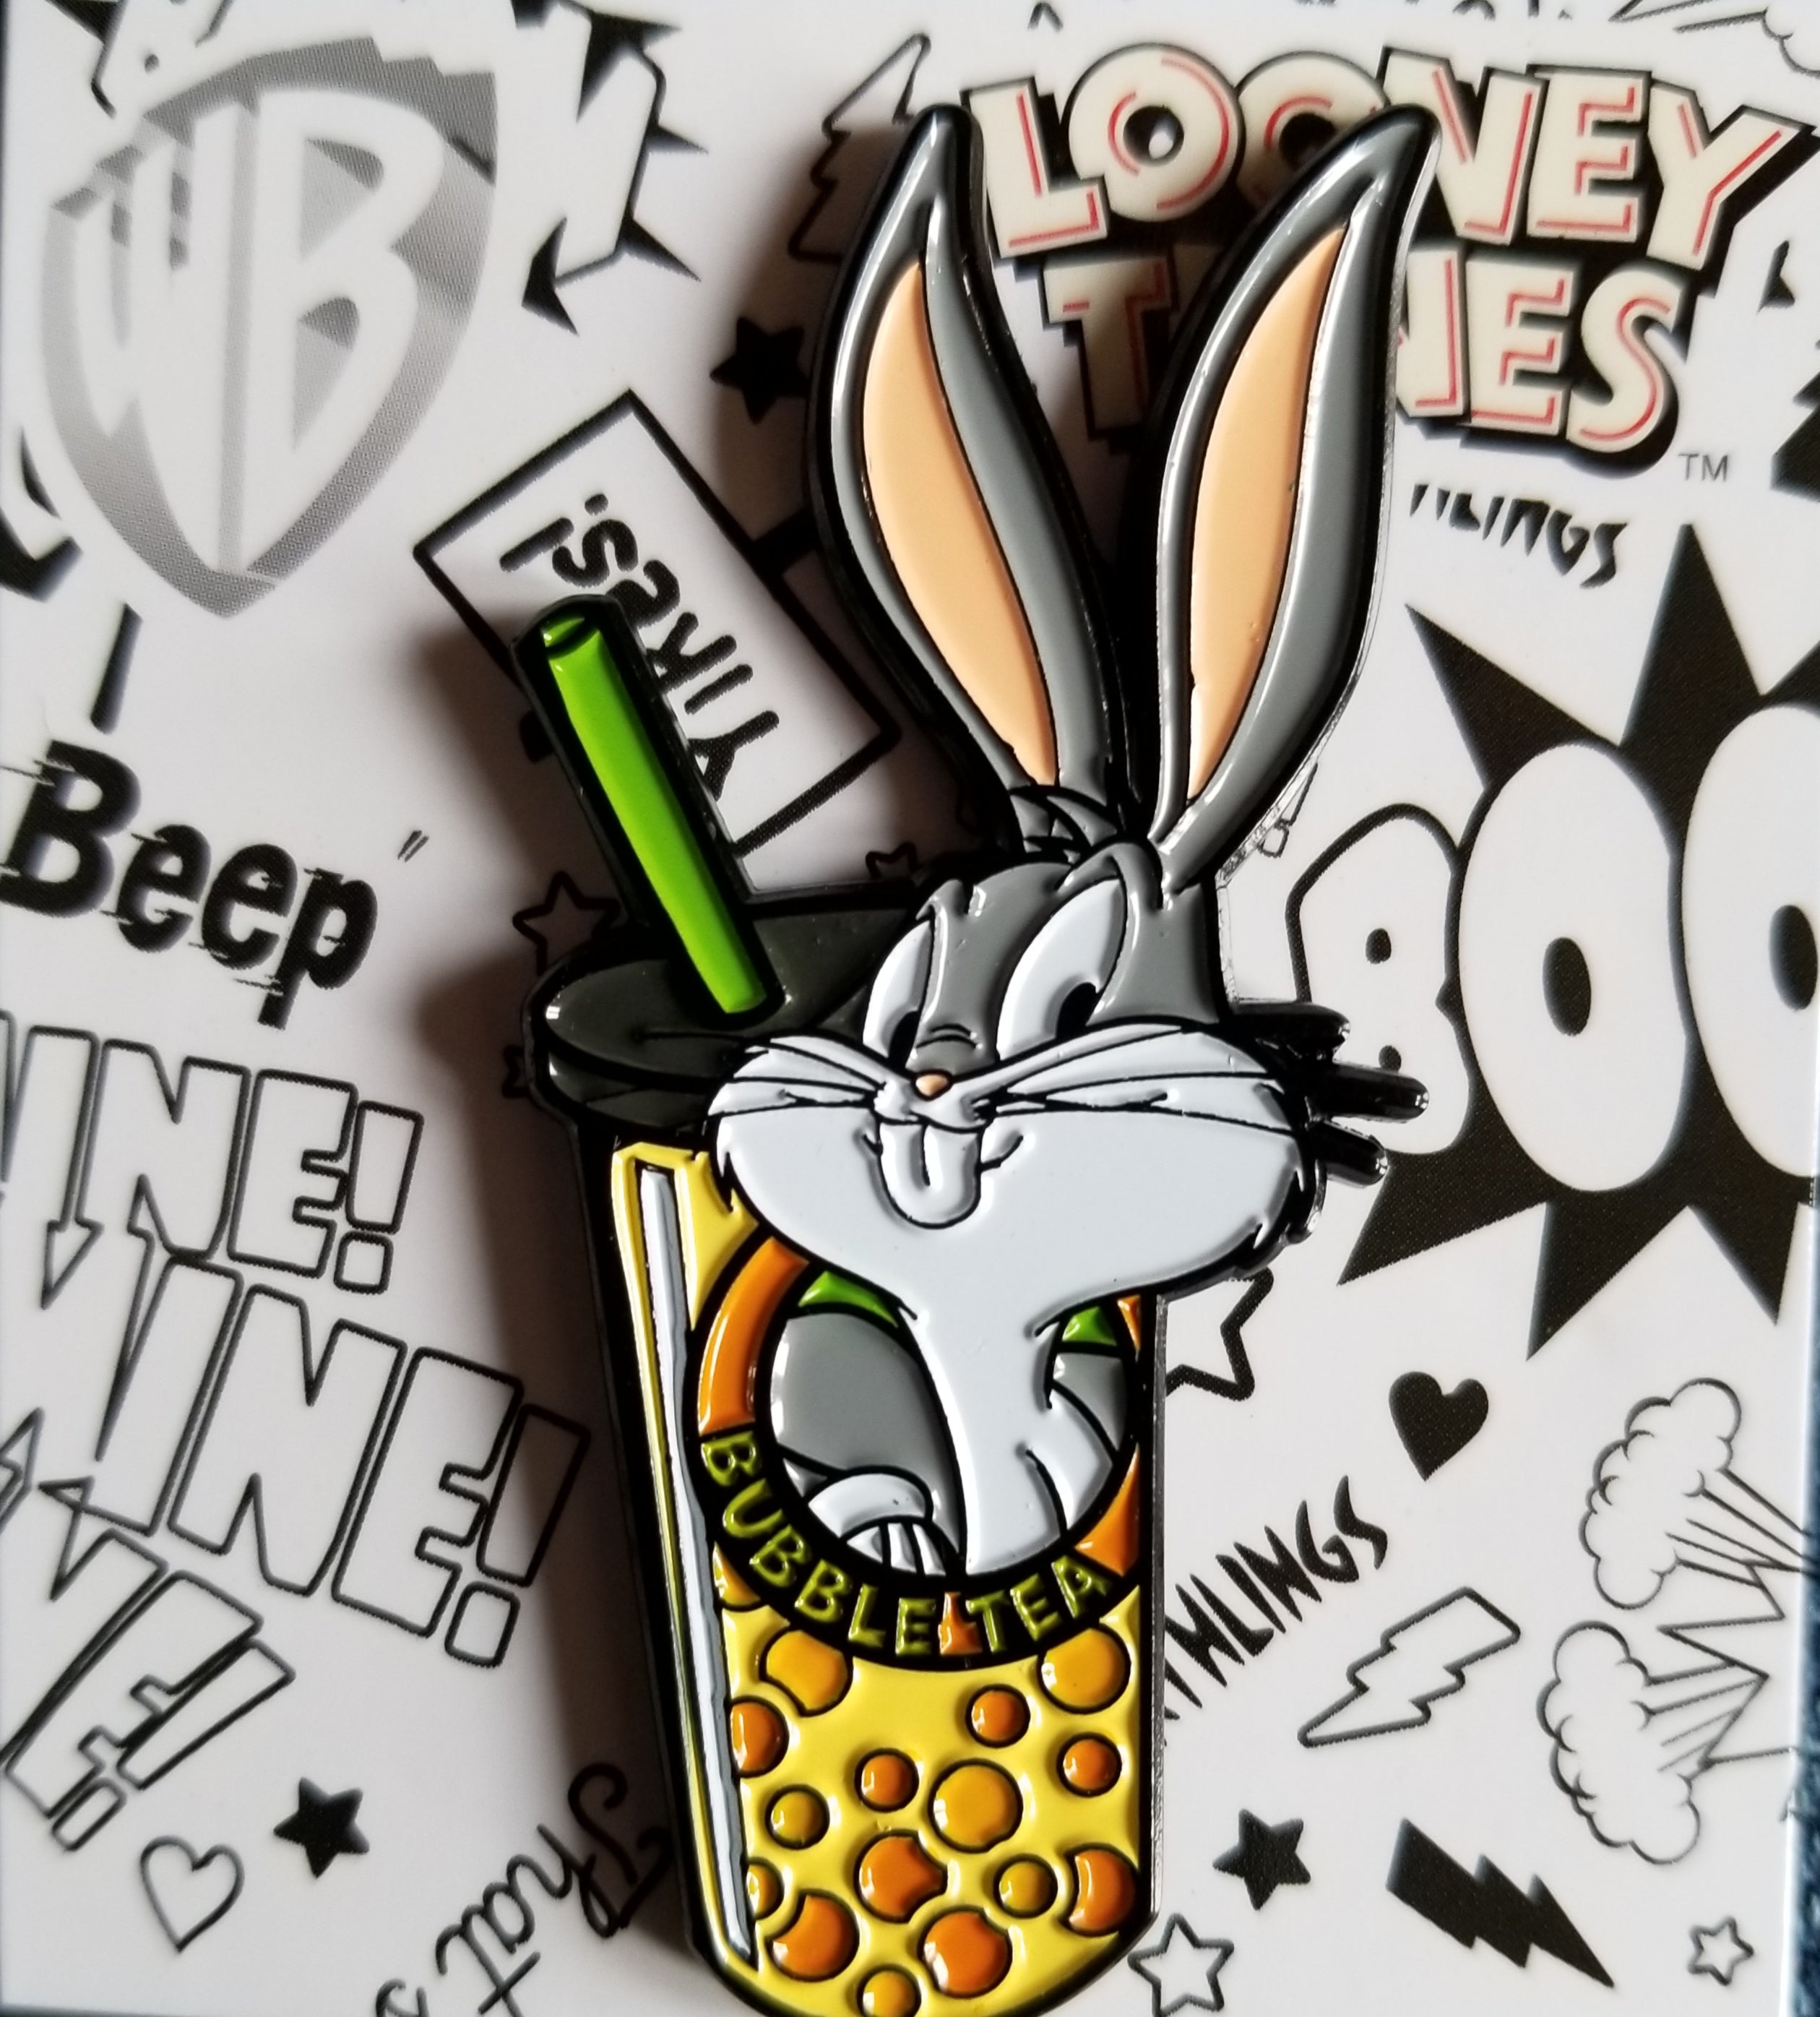 Bugs Bunny Pin